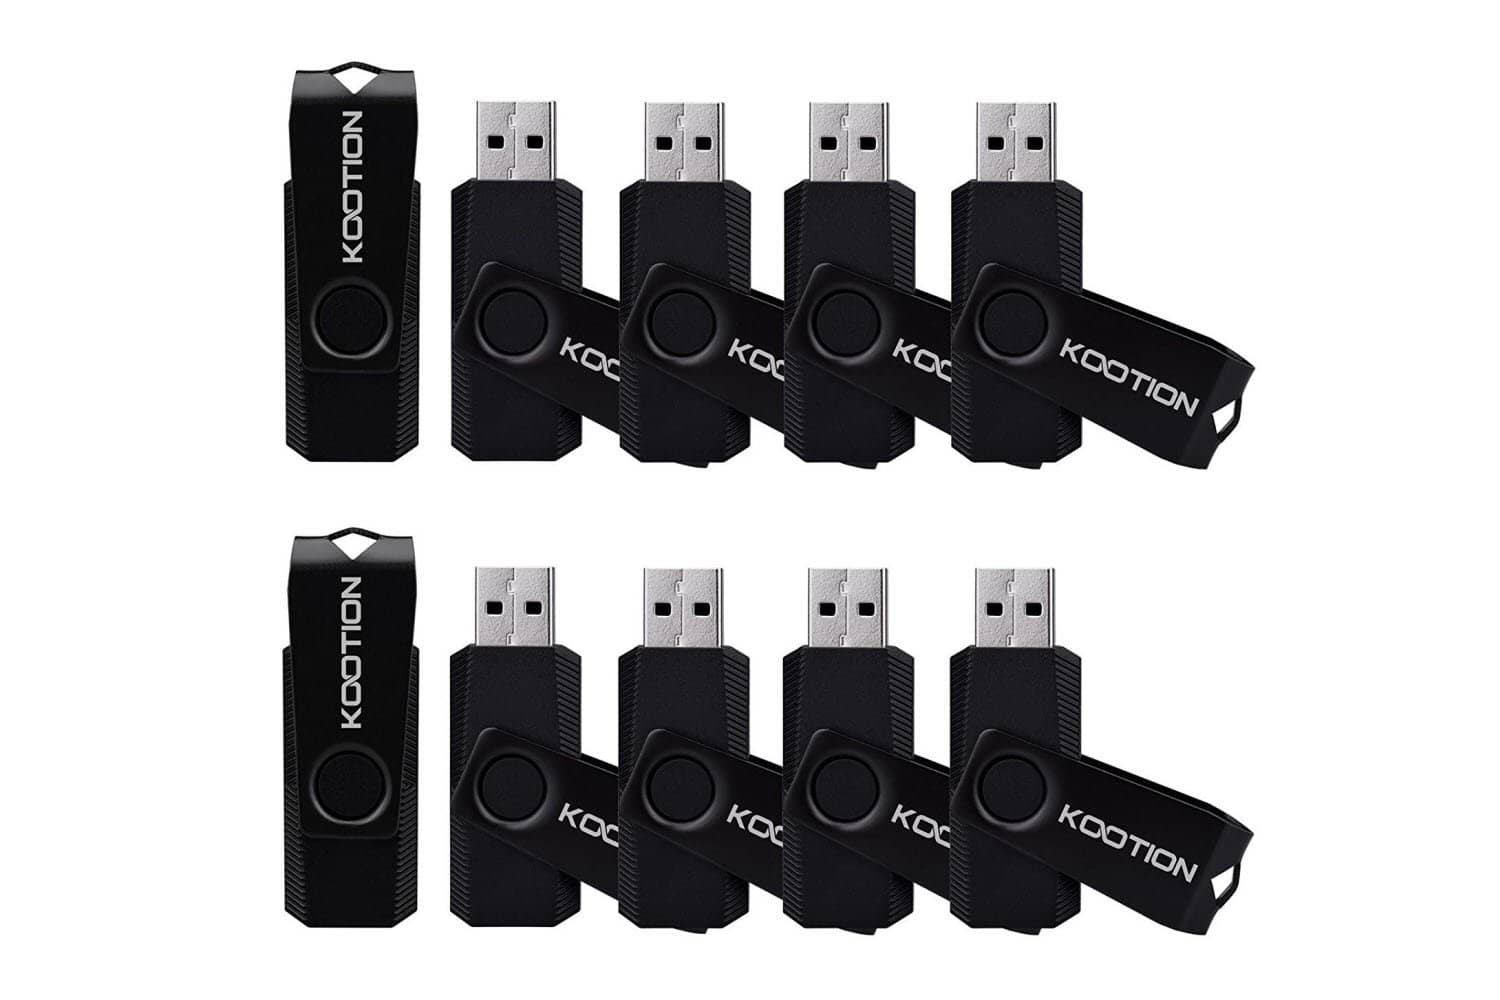 KOOTION 10 PCS 4GB USB Flash Drive